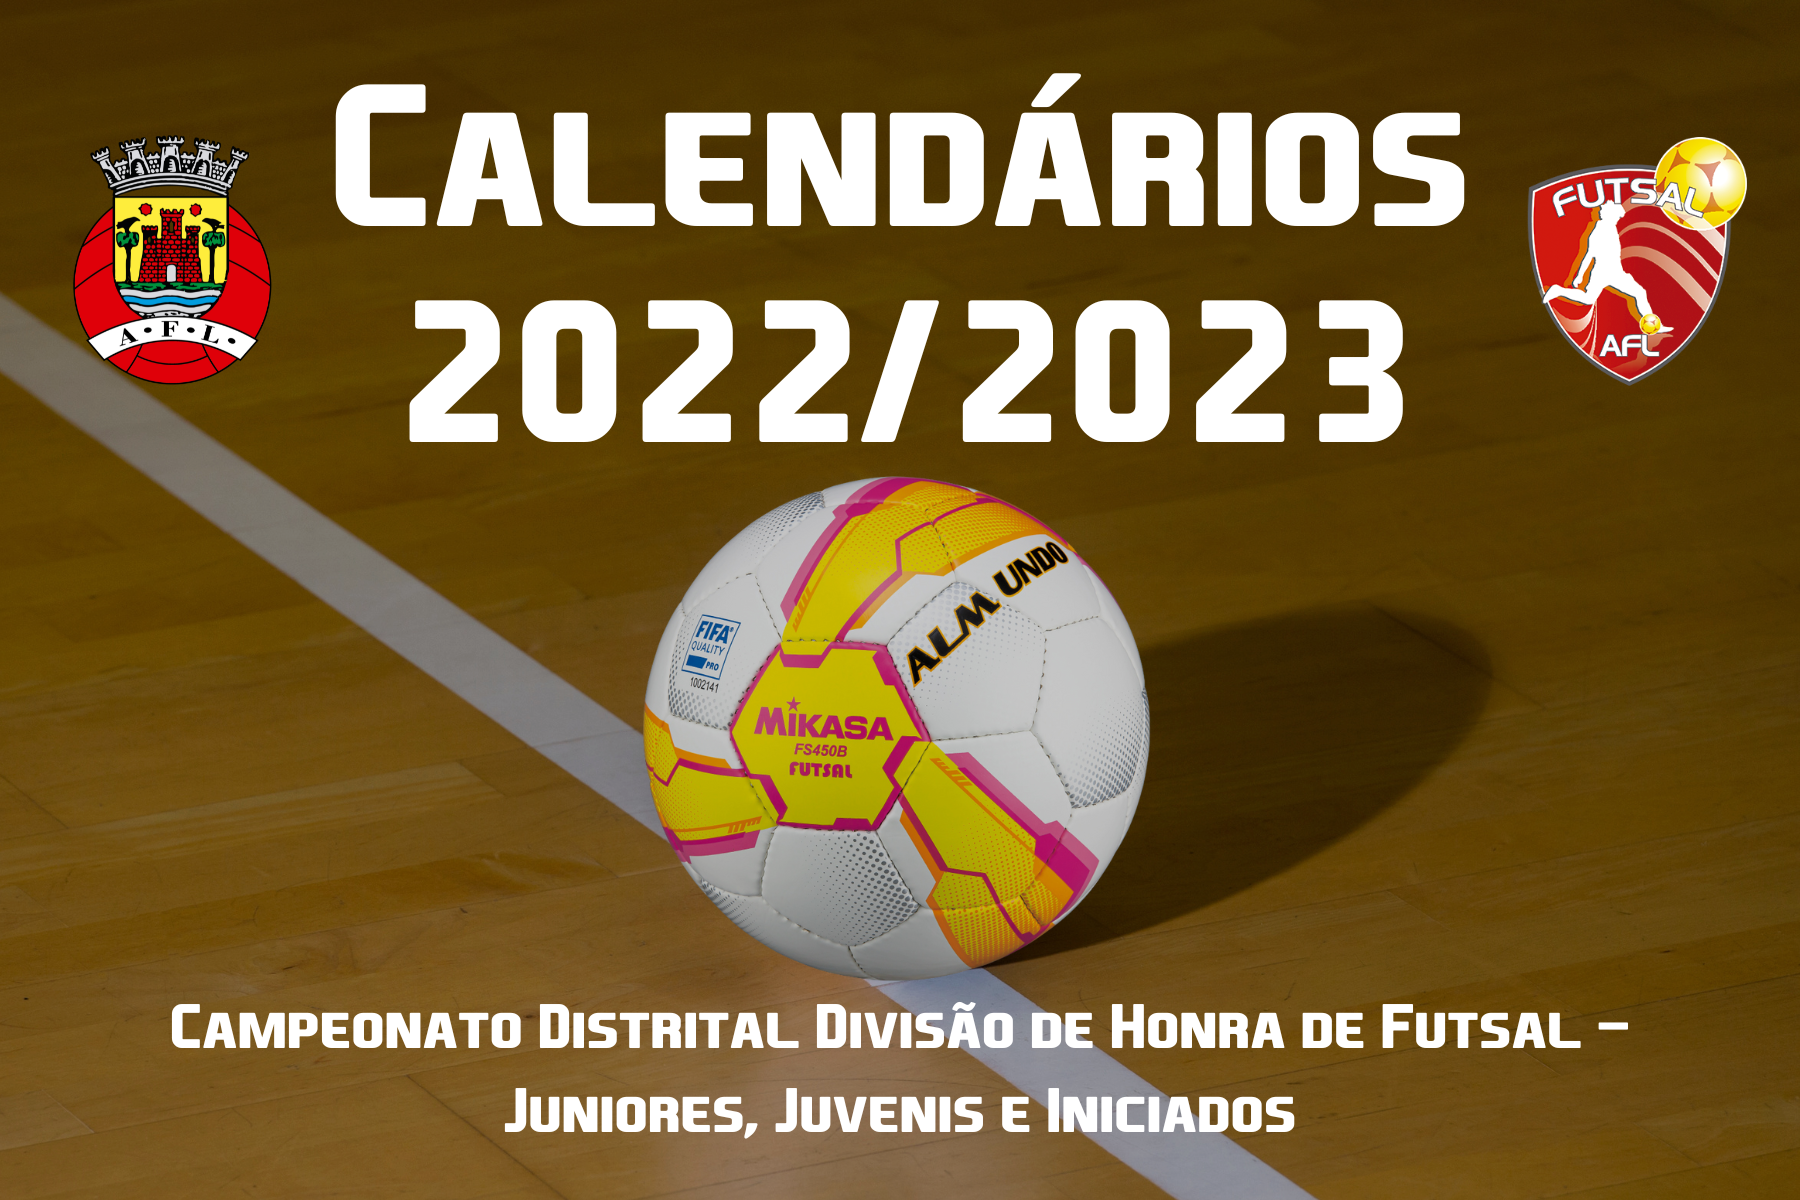 Calendários do Campeonato Distrital Divisão de Honra de Futsal conhecidos